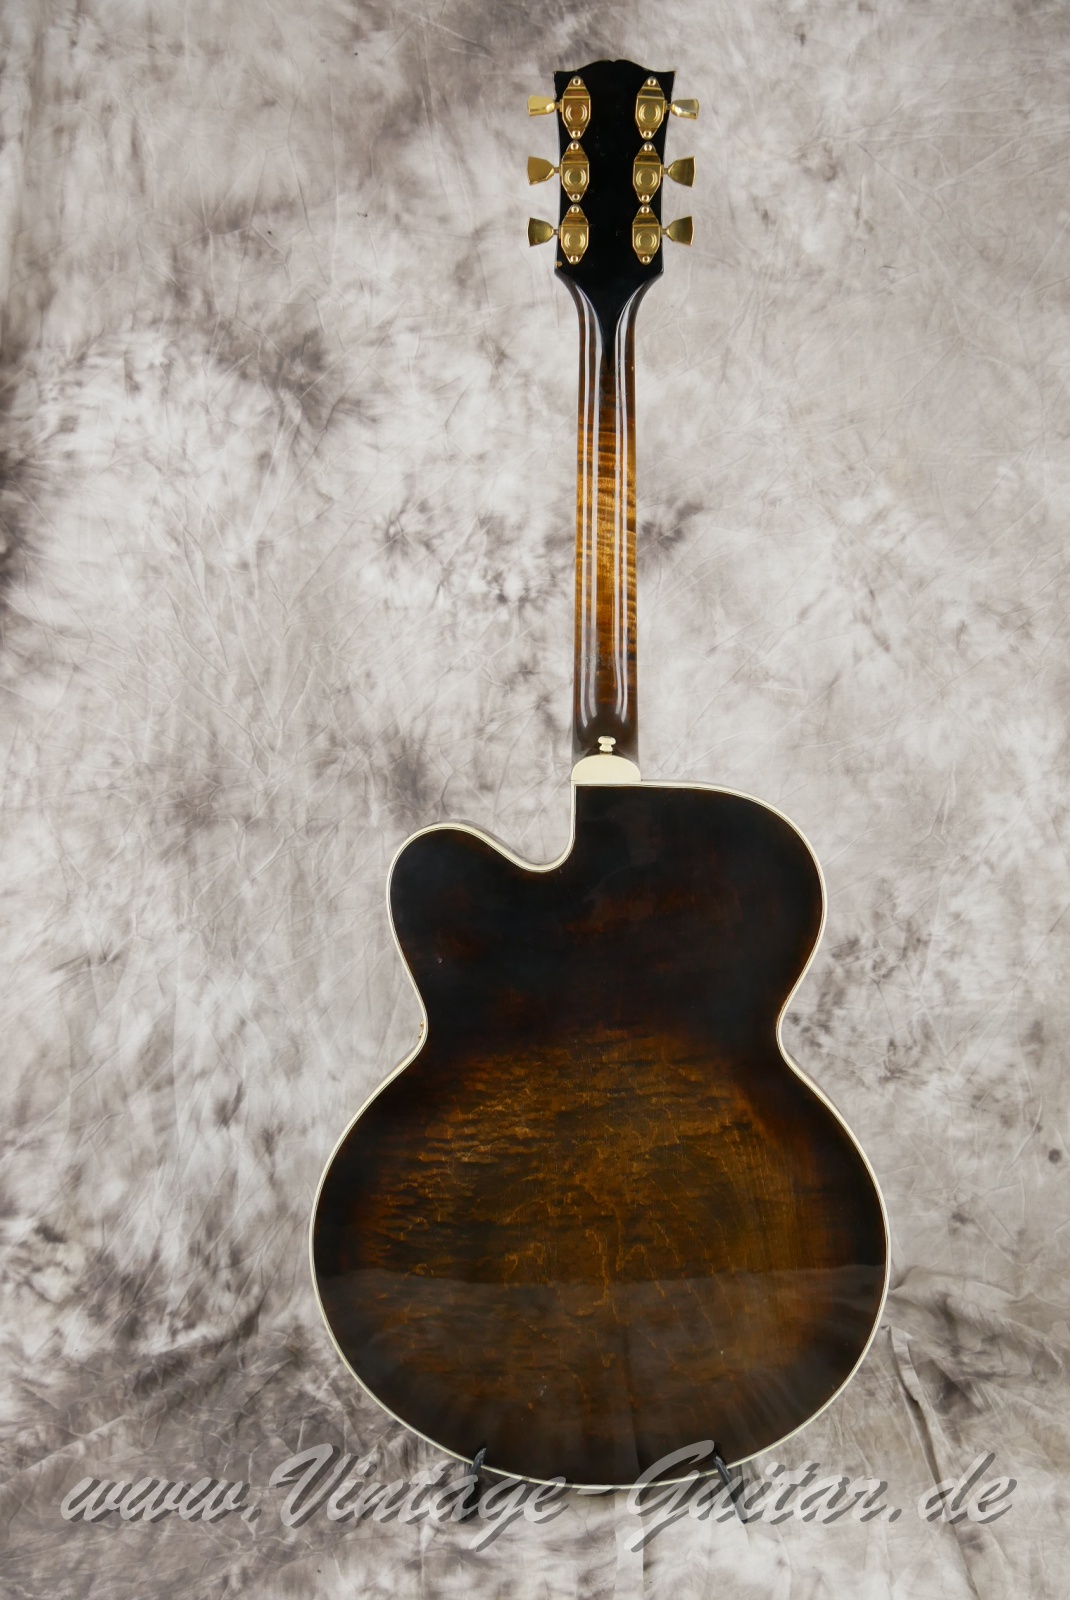 Gibson_Byrdland_venetian_cutaway_walnut_1969-002.JPG